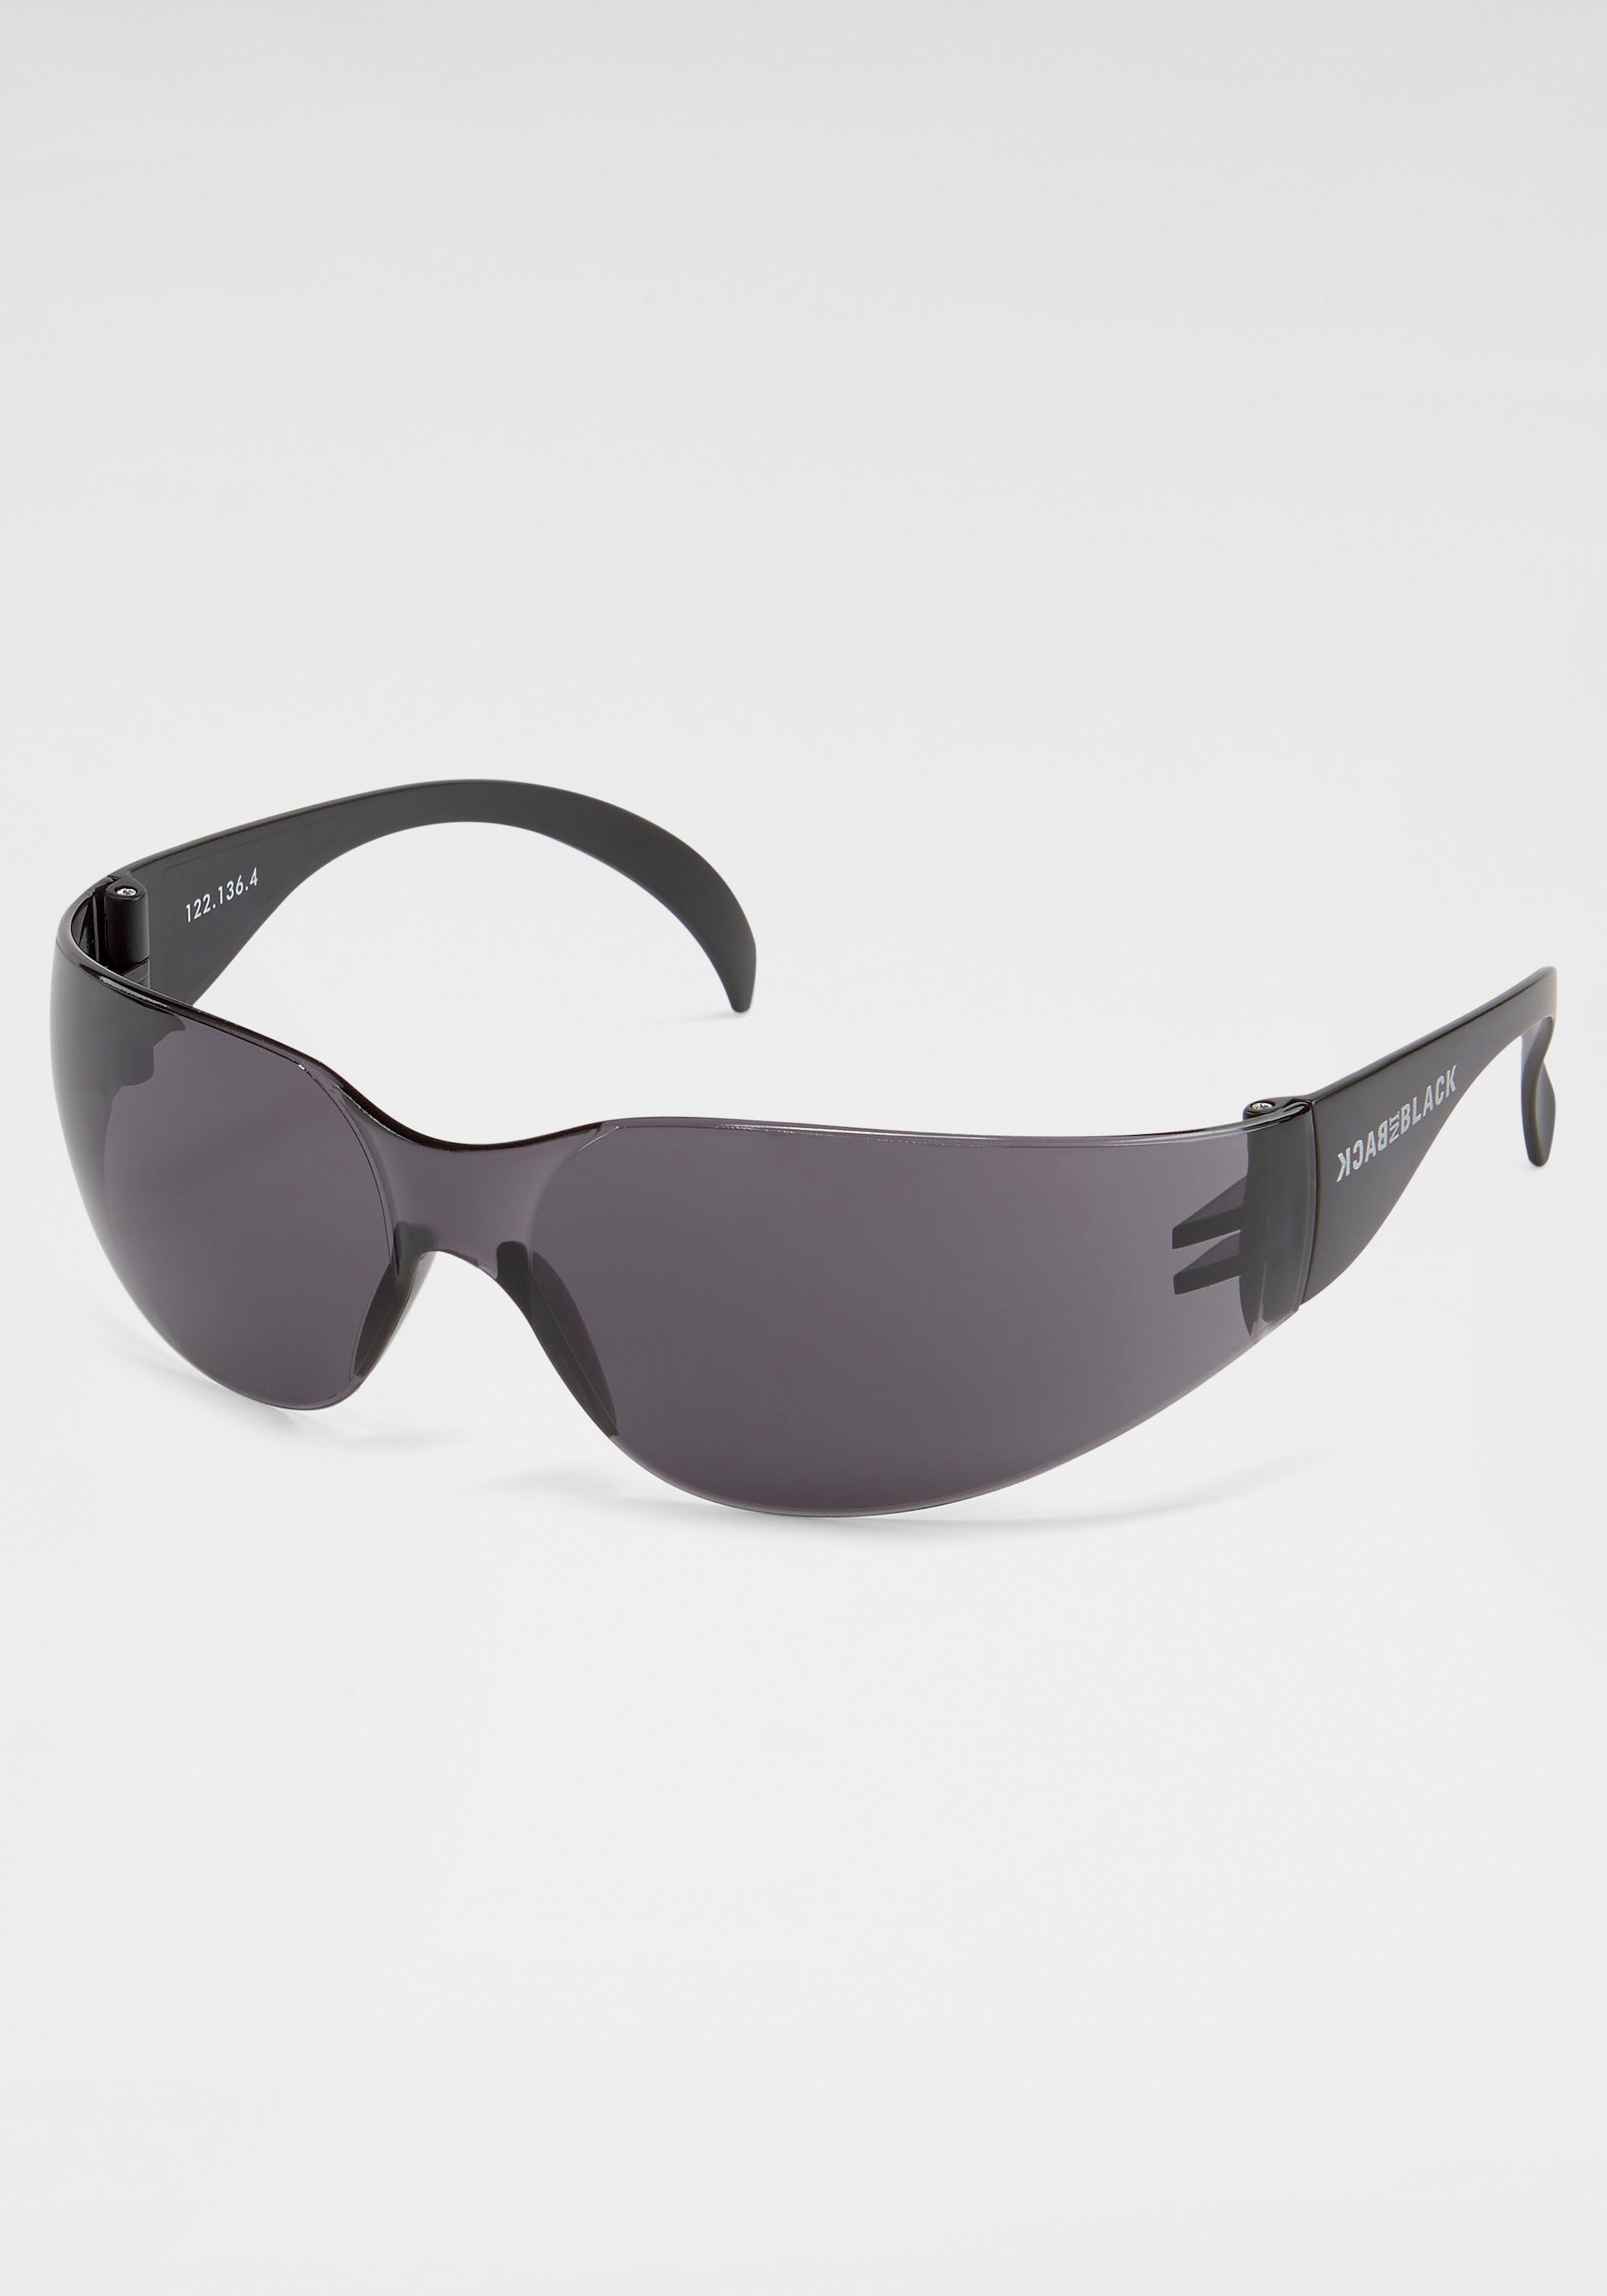 BACK IN für Eyewear Sonnenbrille, Randlos | BLACK kaufen BAUR